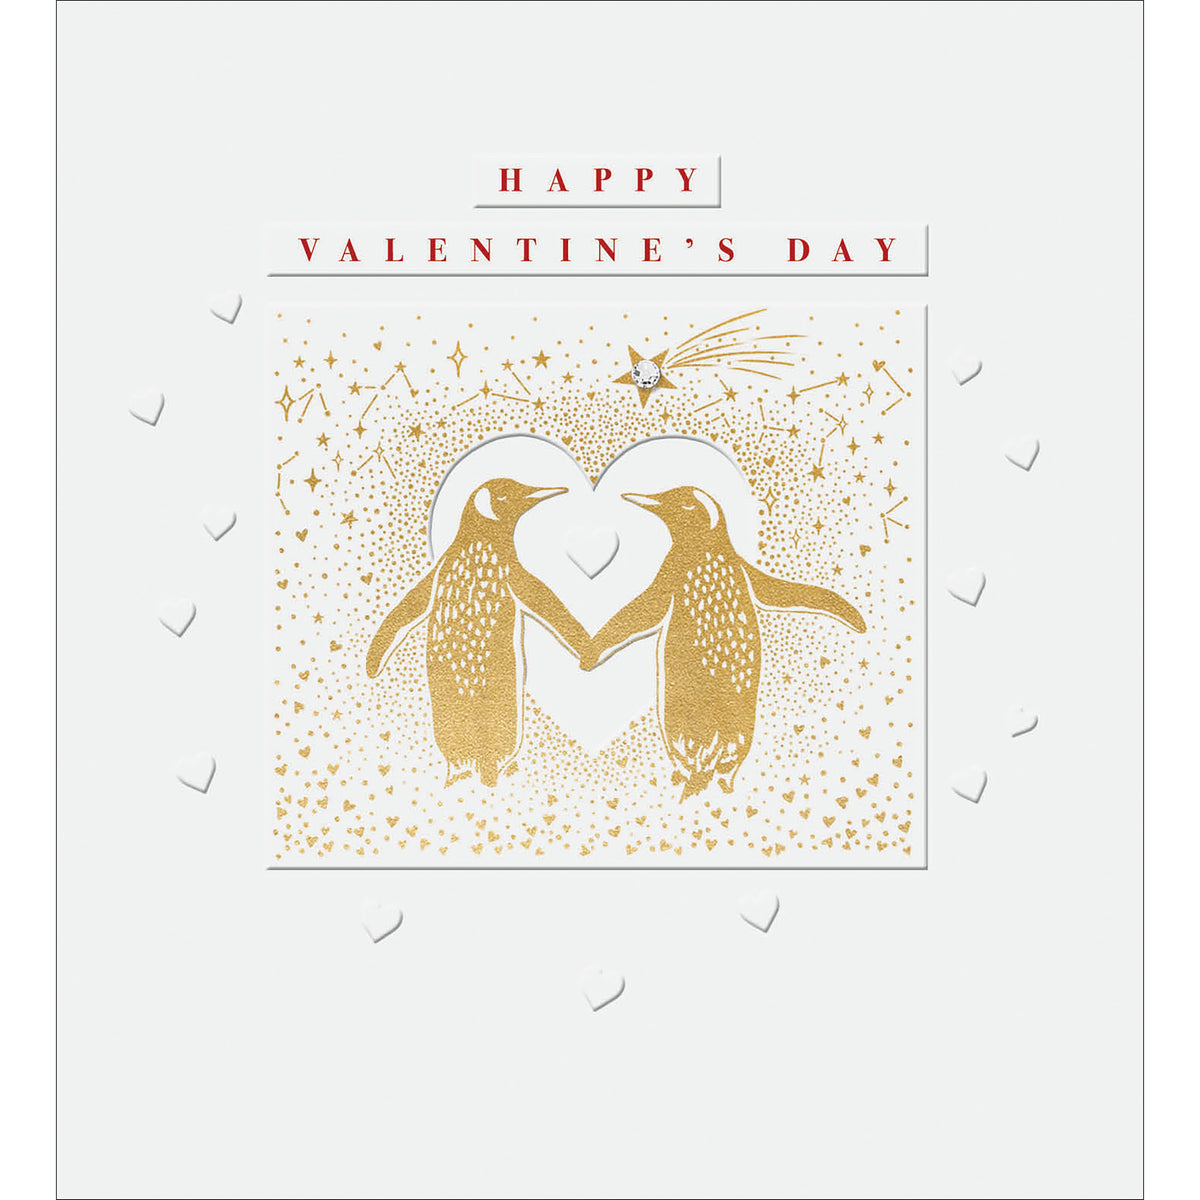 Penguins Sparkle Embellished Valentine Card from Penny Black